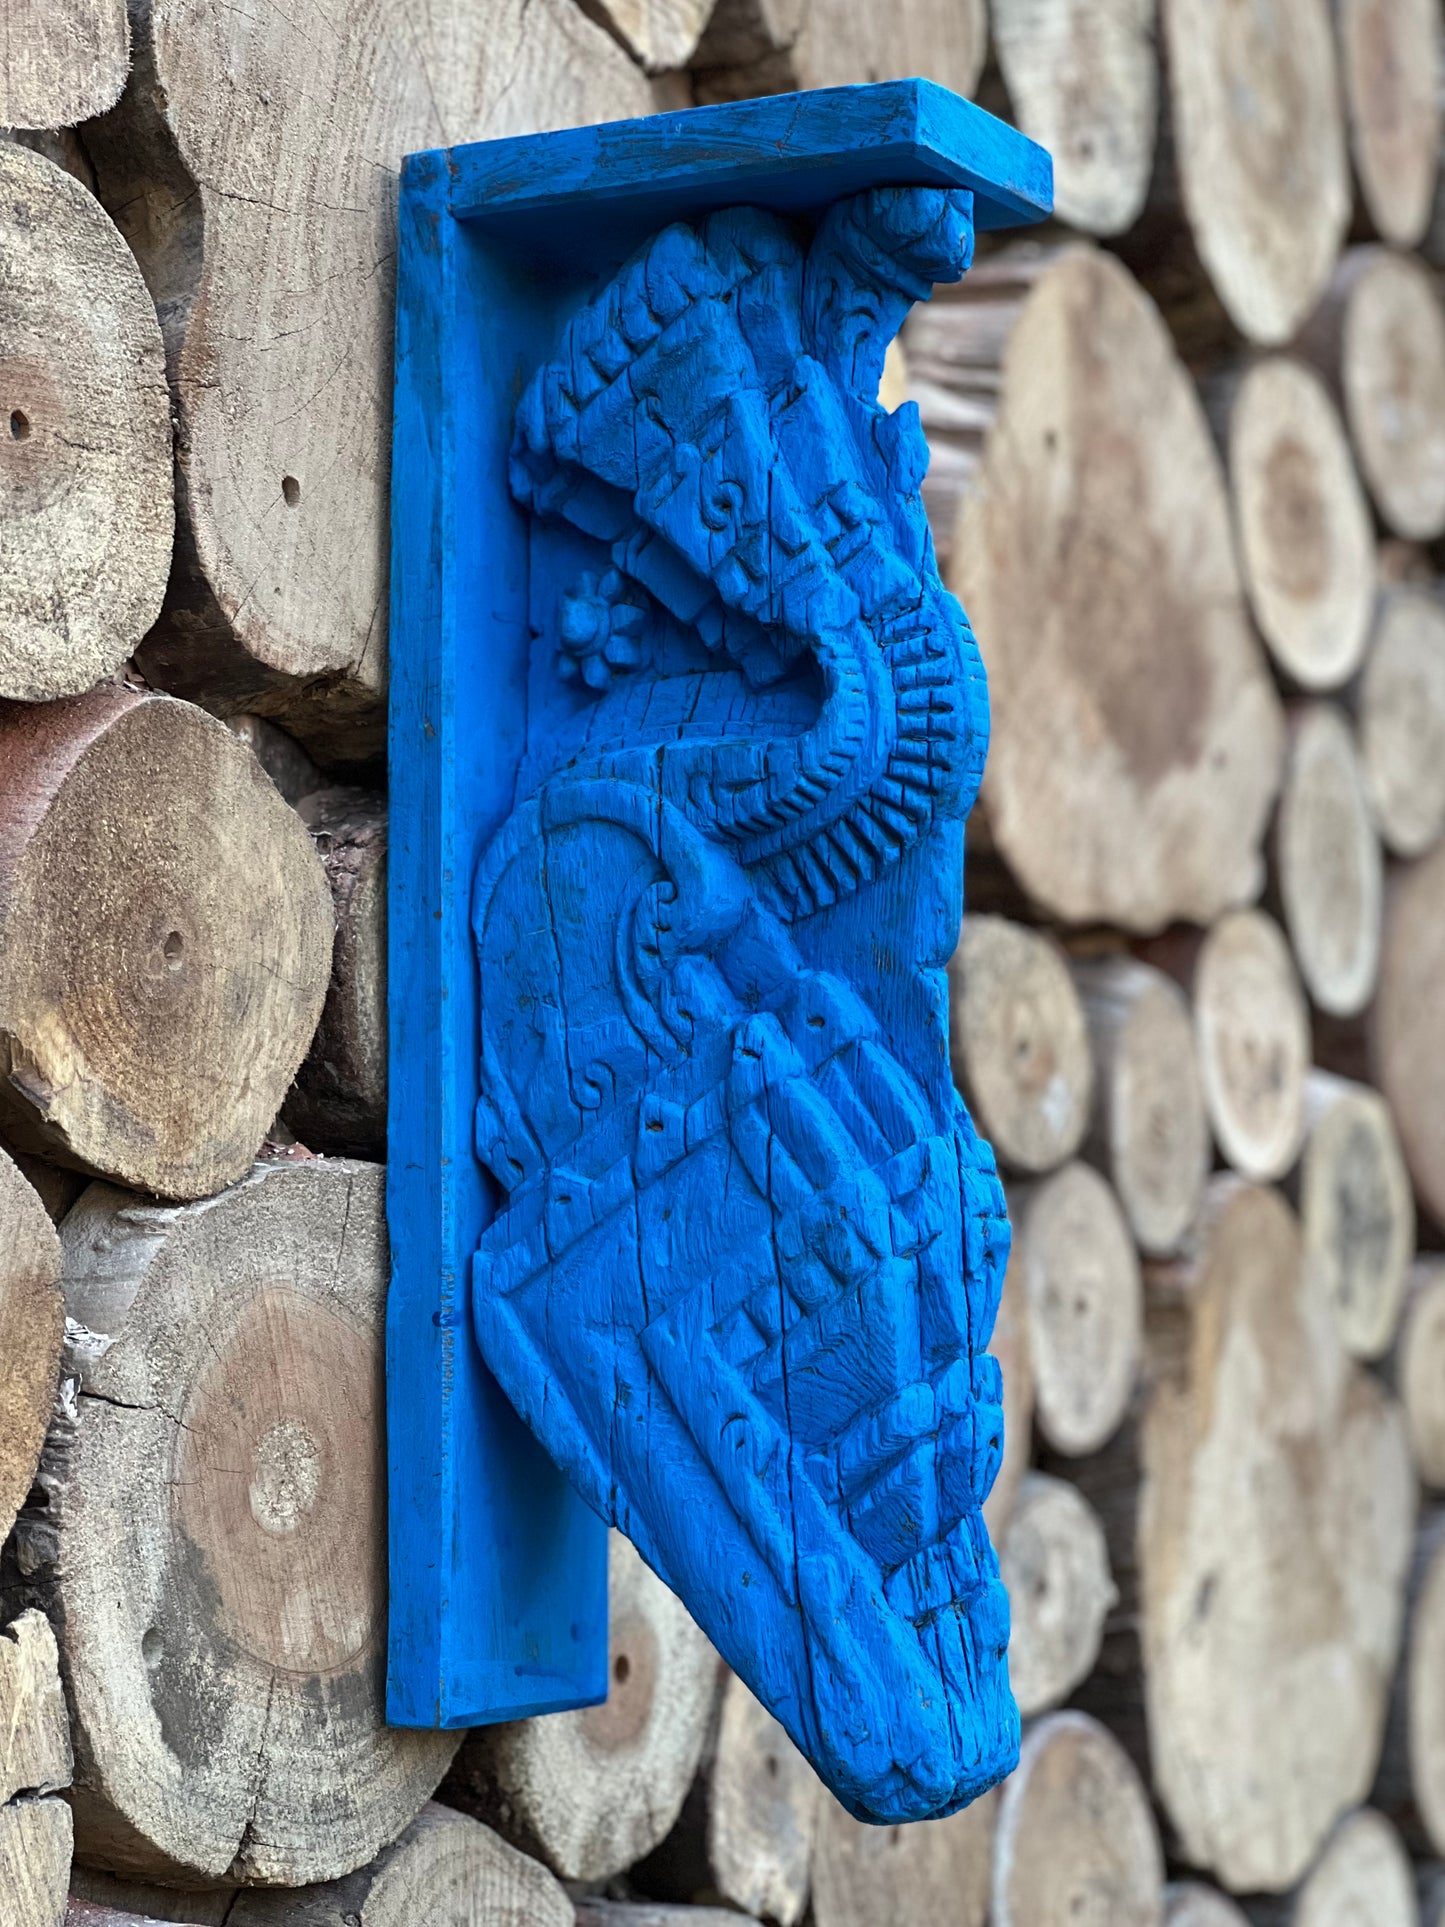 Vintage Blue Wooden Carved Wall Bracket Decorative